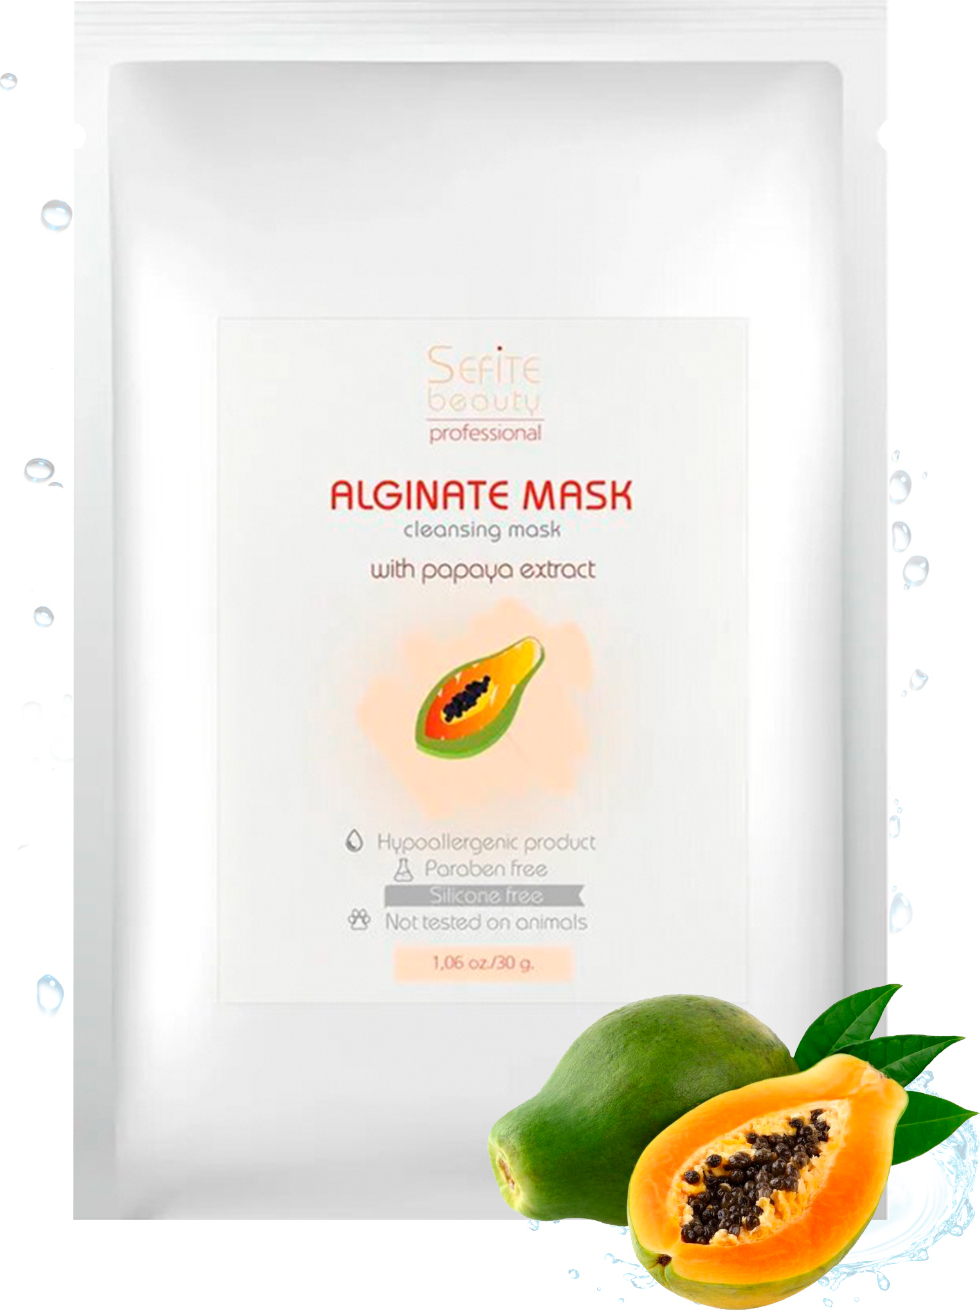 фото Альгинатная маска Sefite с экстрактом папайи очищающая, 30 гр.